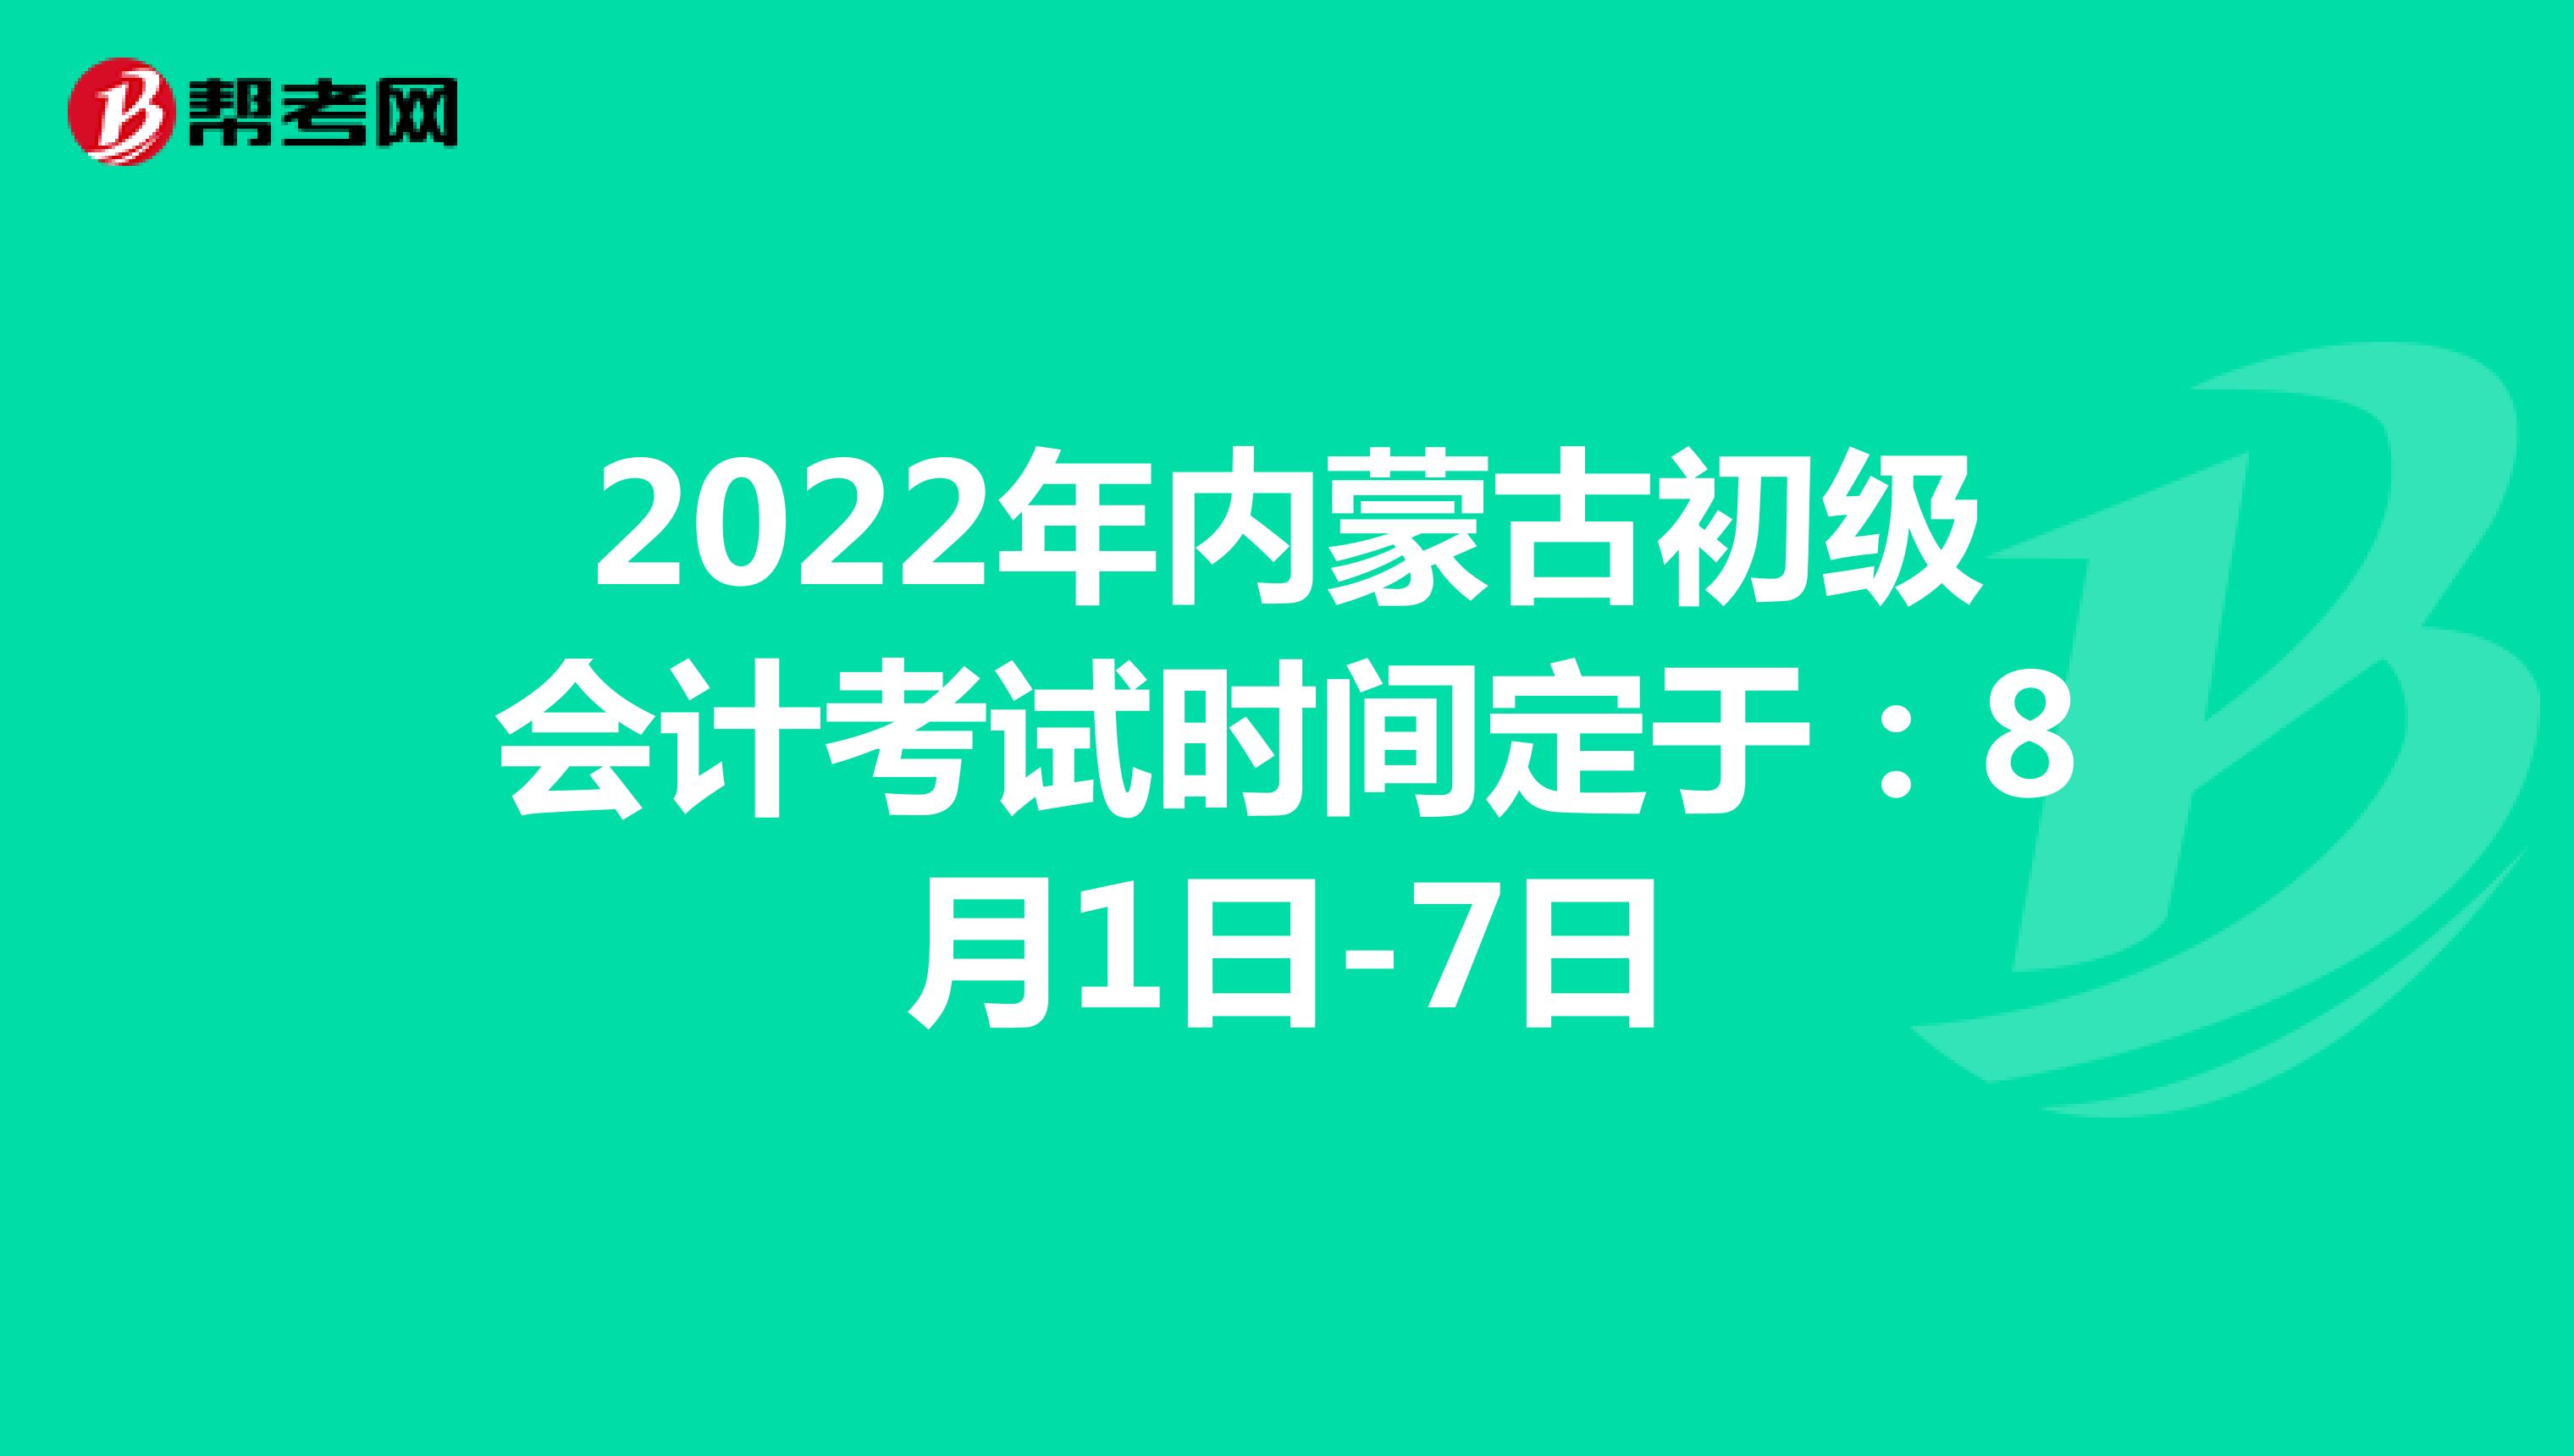 2022年内蒙古初级会计考试时间定于：8月1日-7日